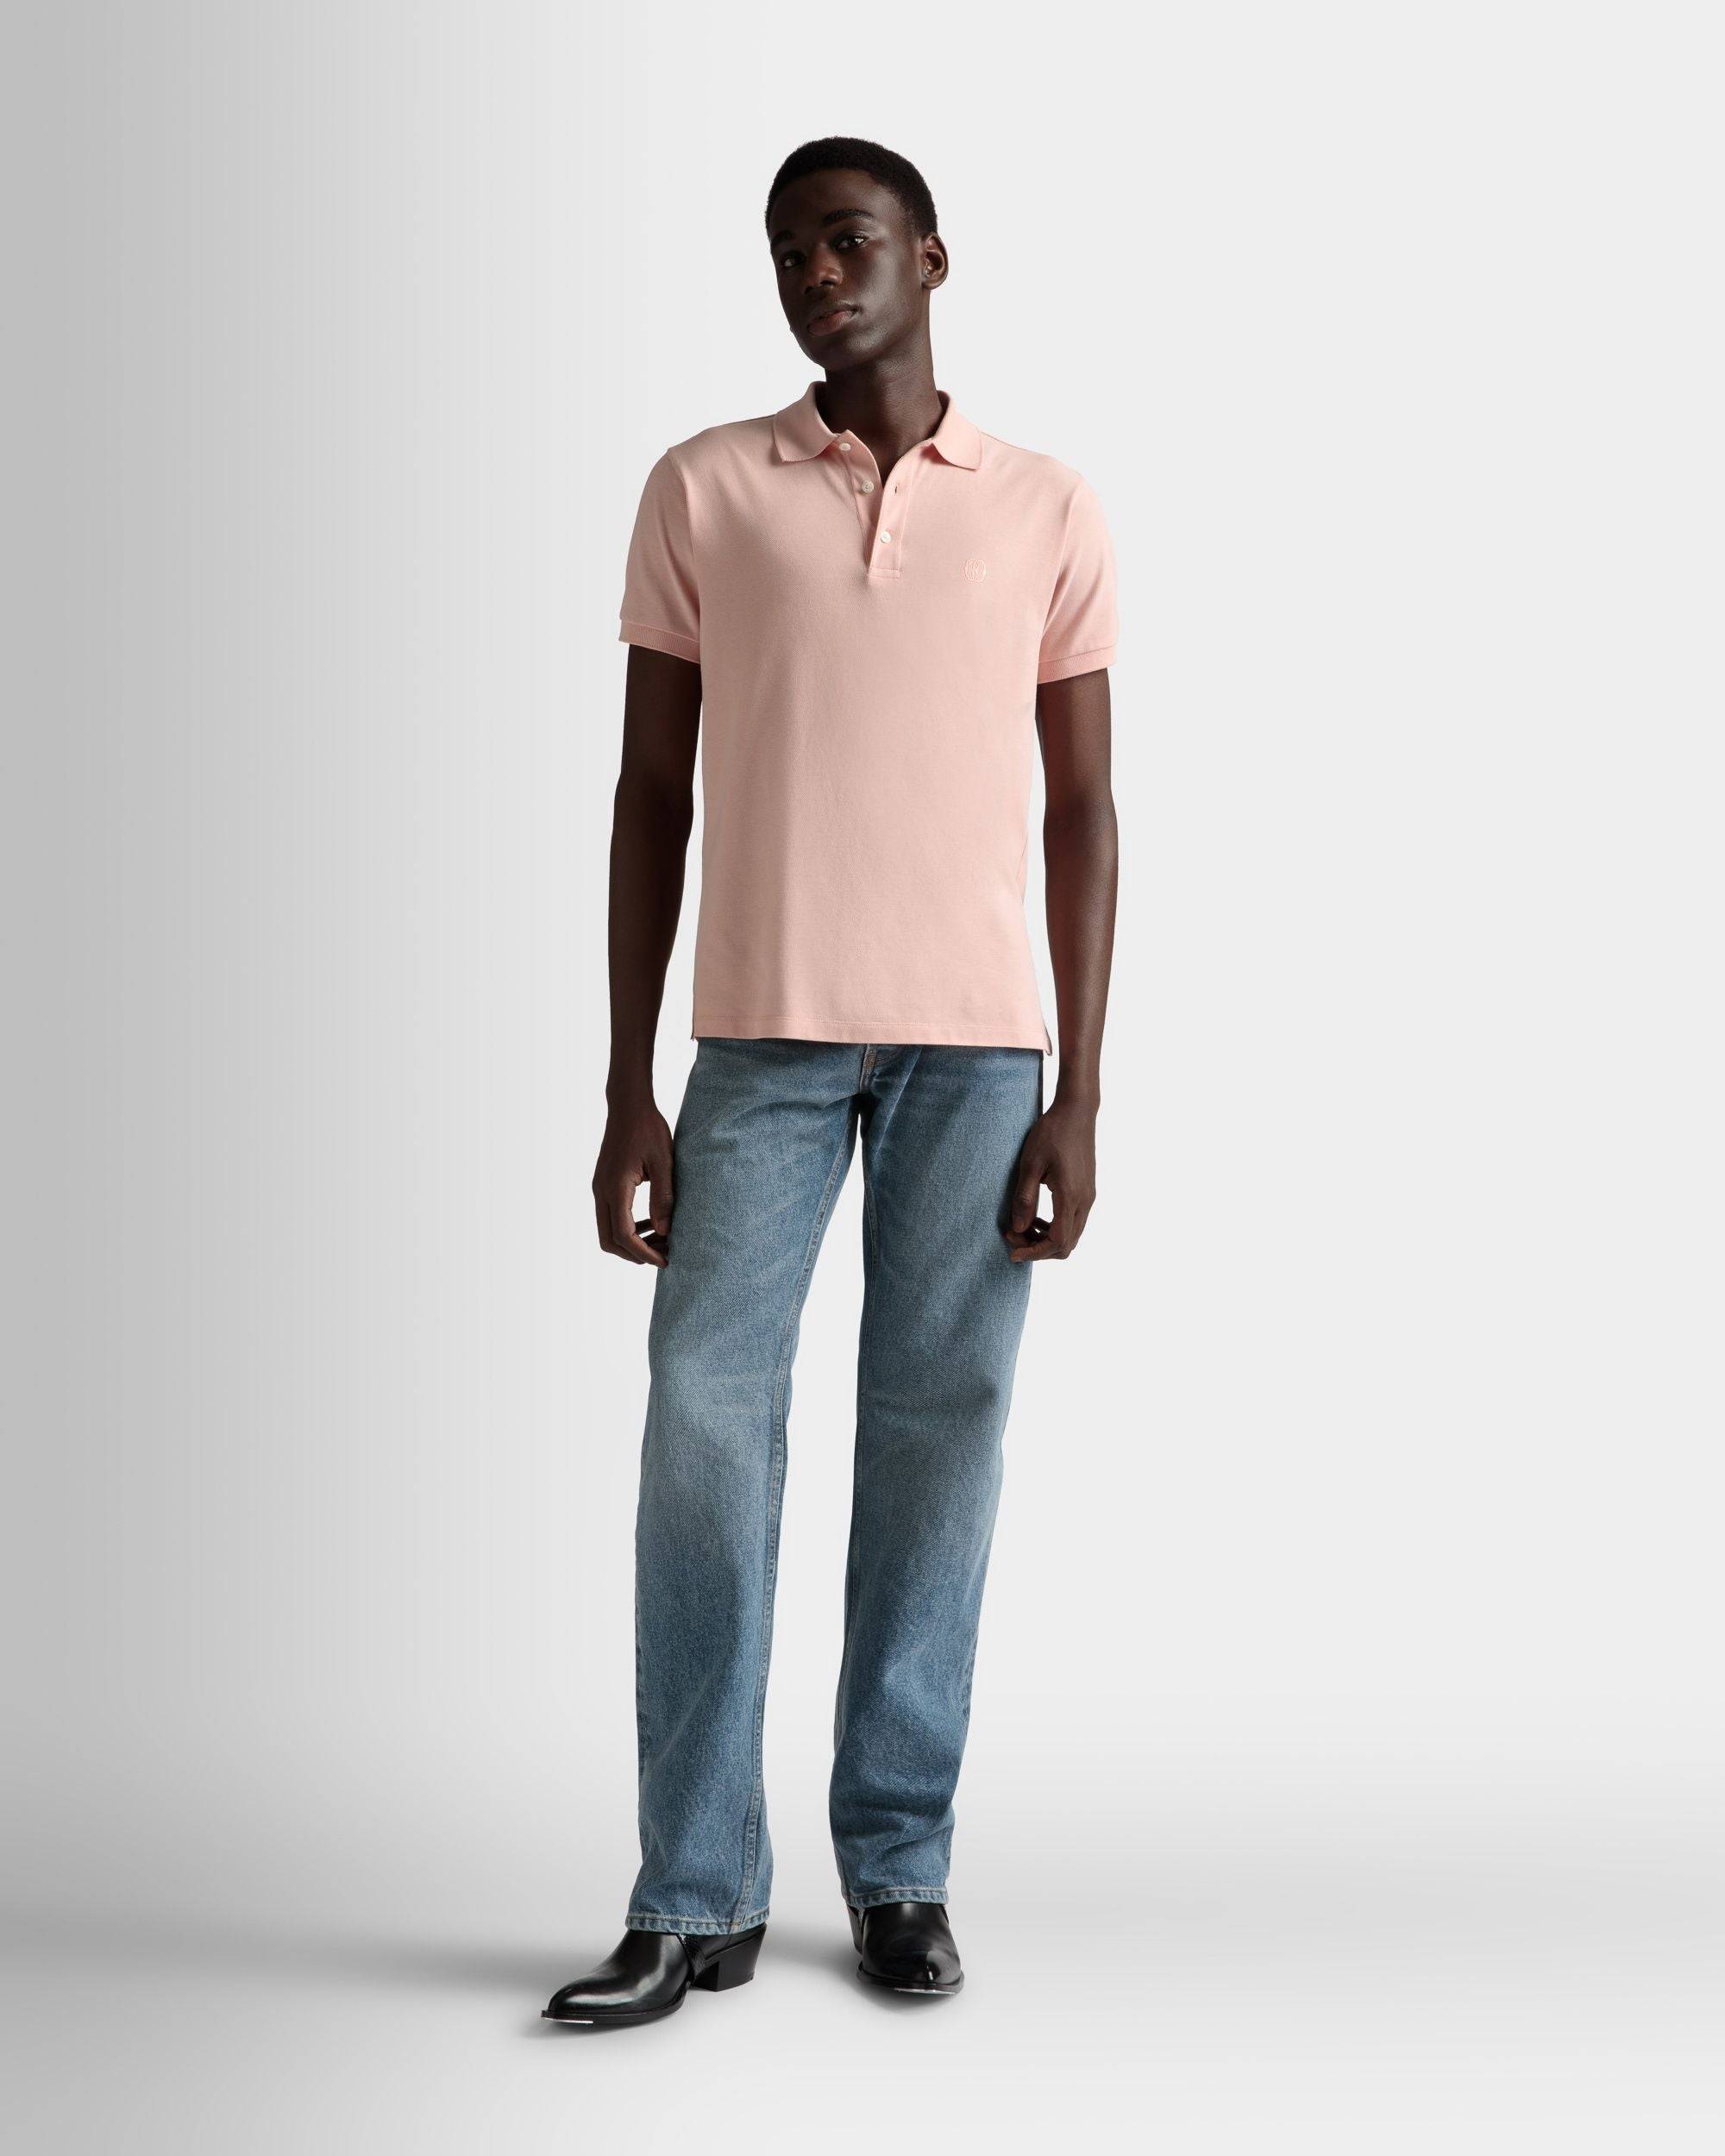 Kurzarm-Poloshirt | Poloshirt für Herren | Baumwolle in Dusty Petal | Bally | Model getragen Vorderseite